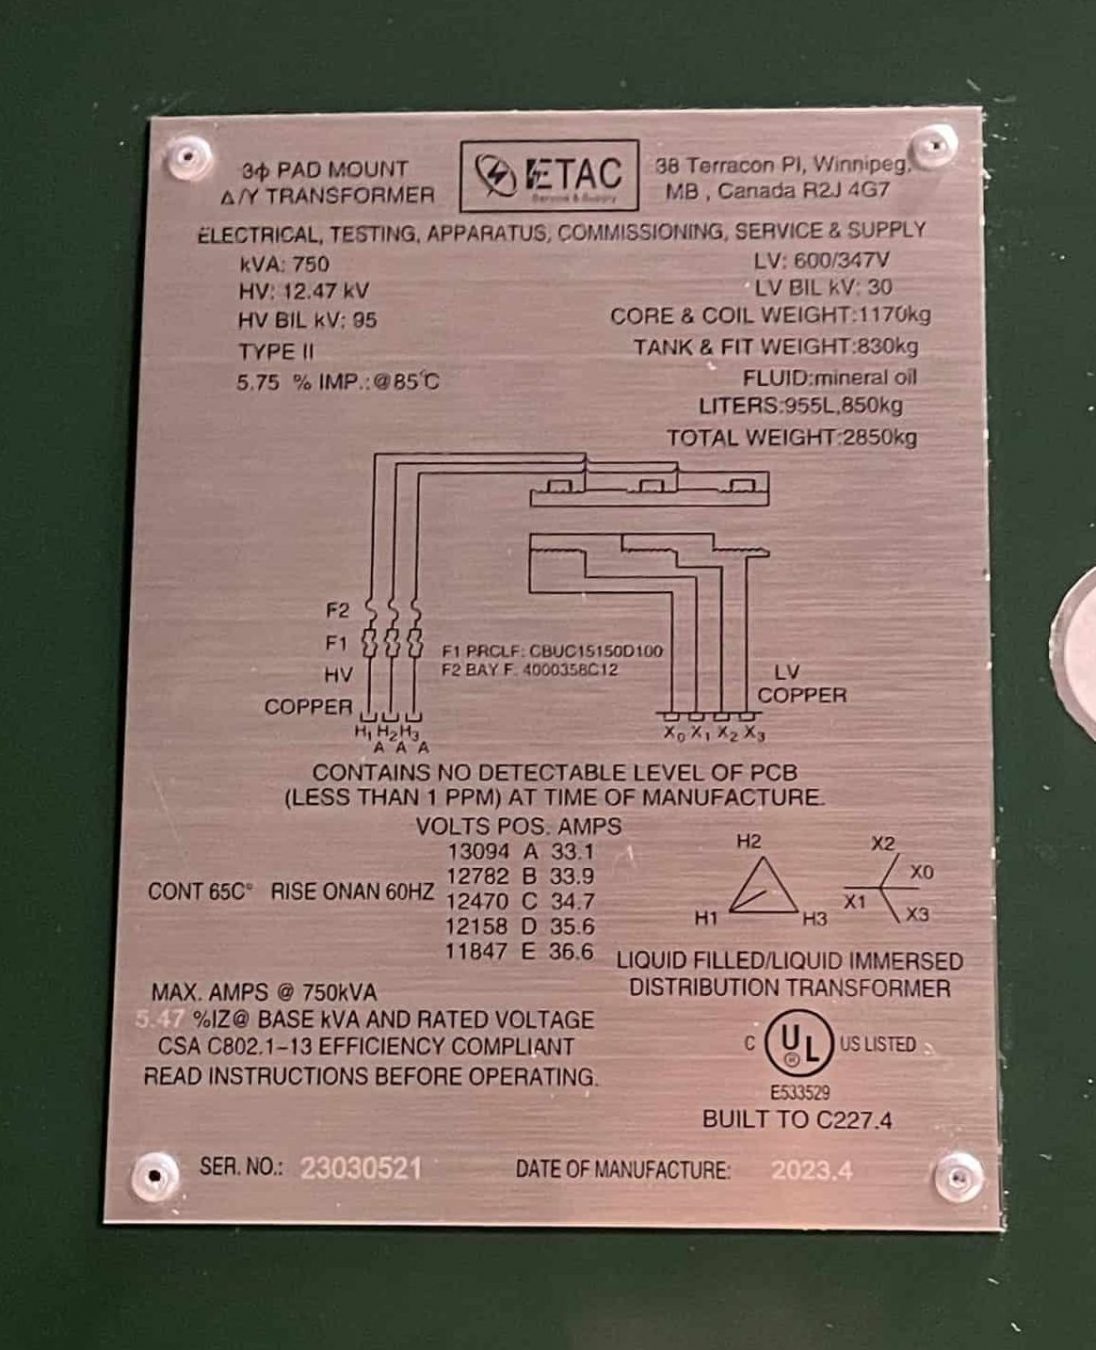 ETAC-Padmount-Transformer-Nameplate-UL-CSA